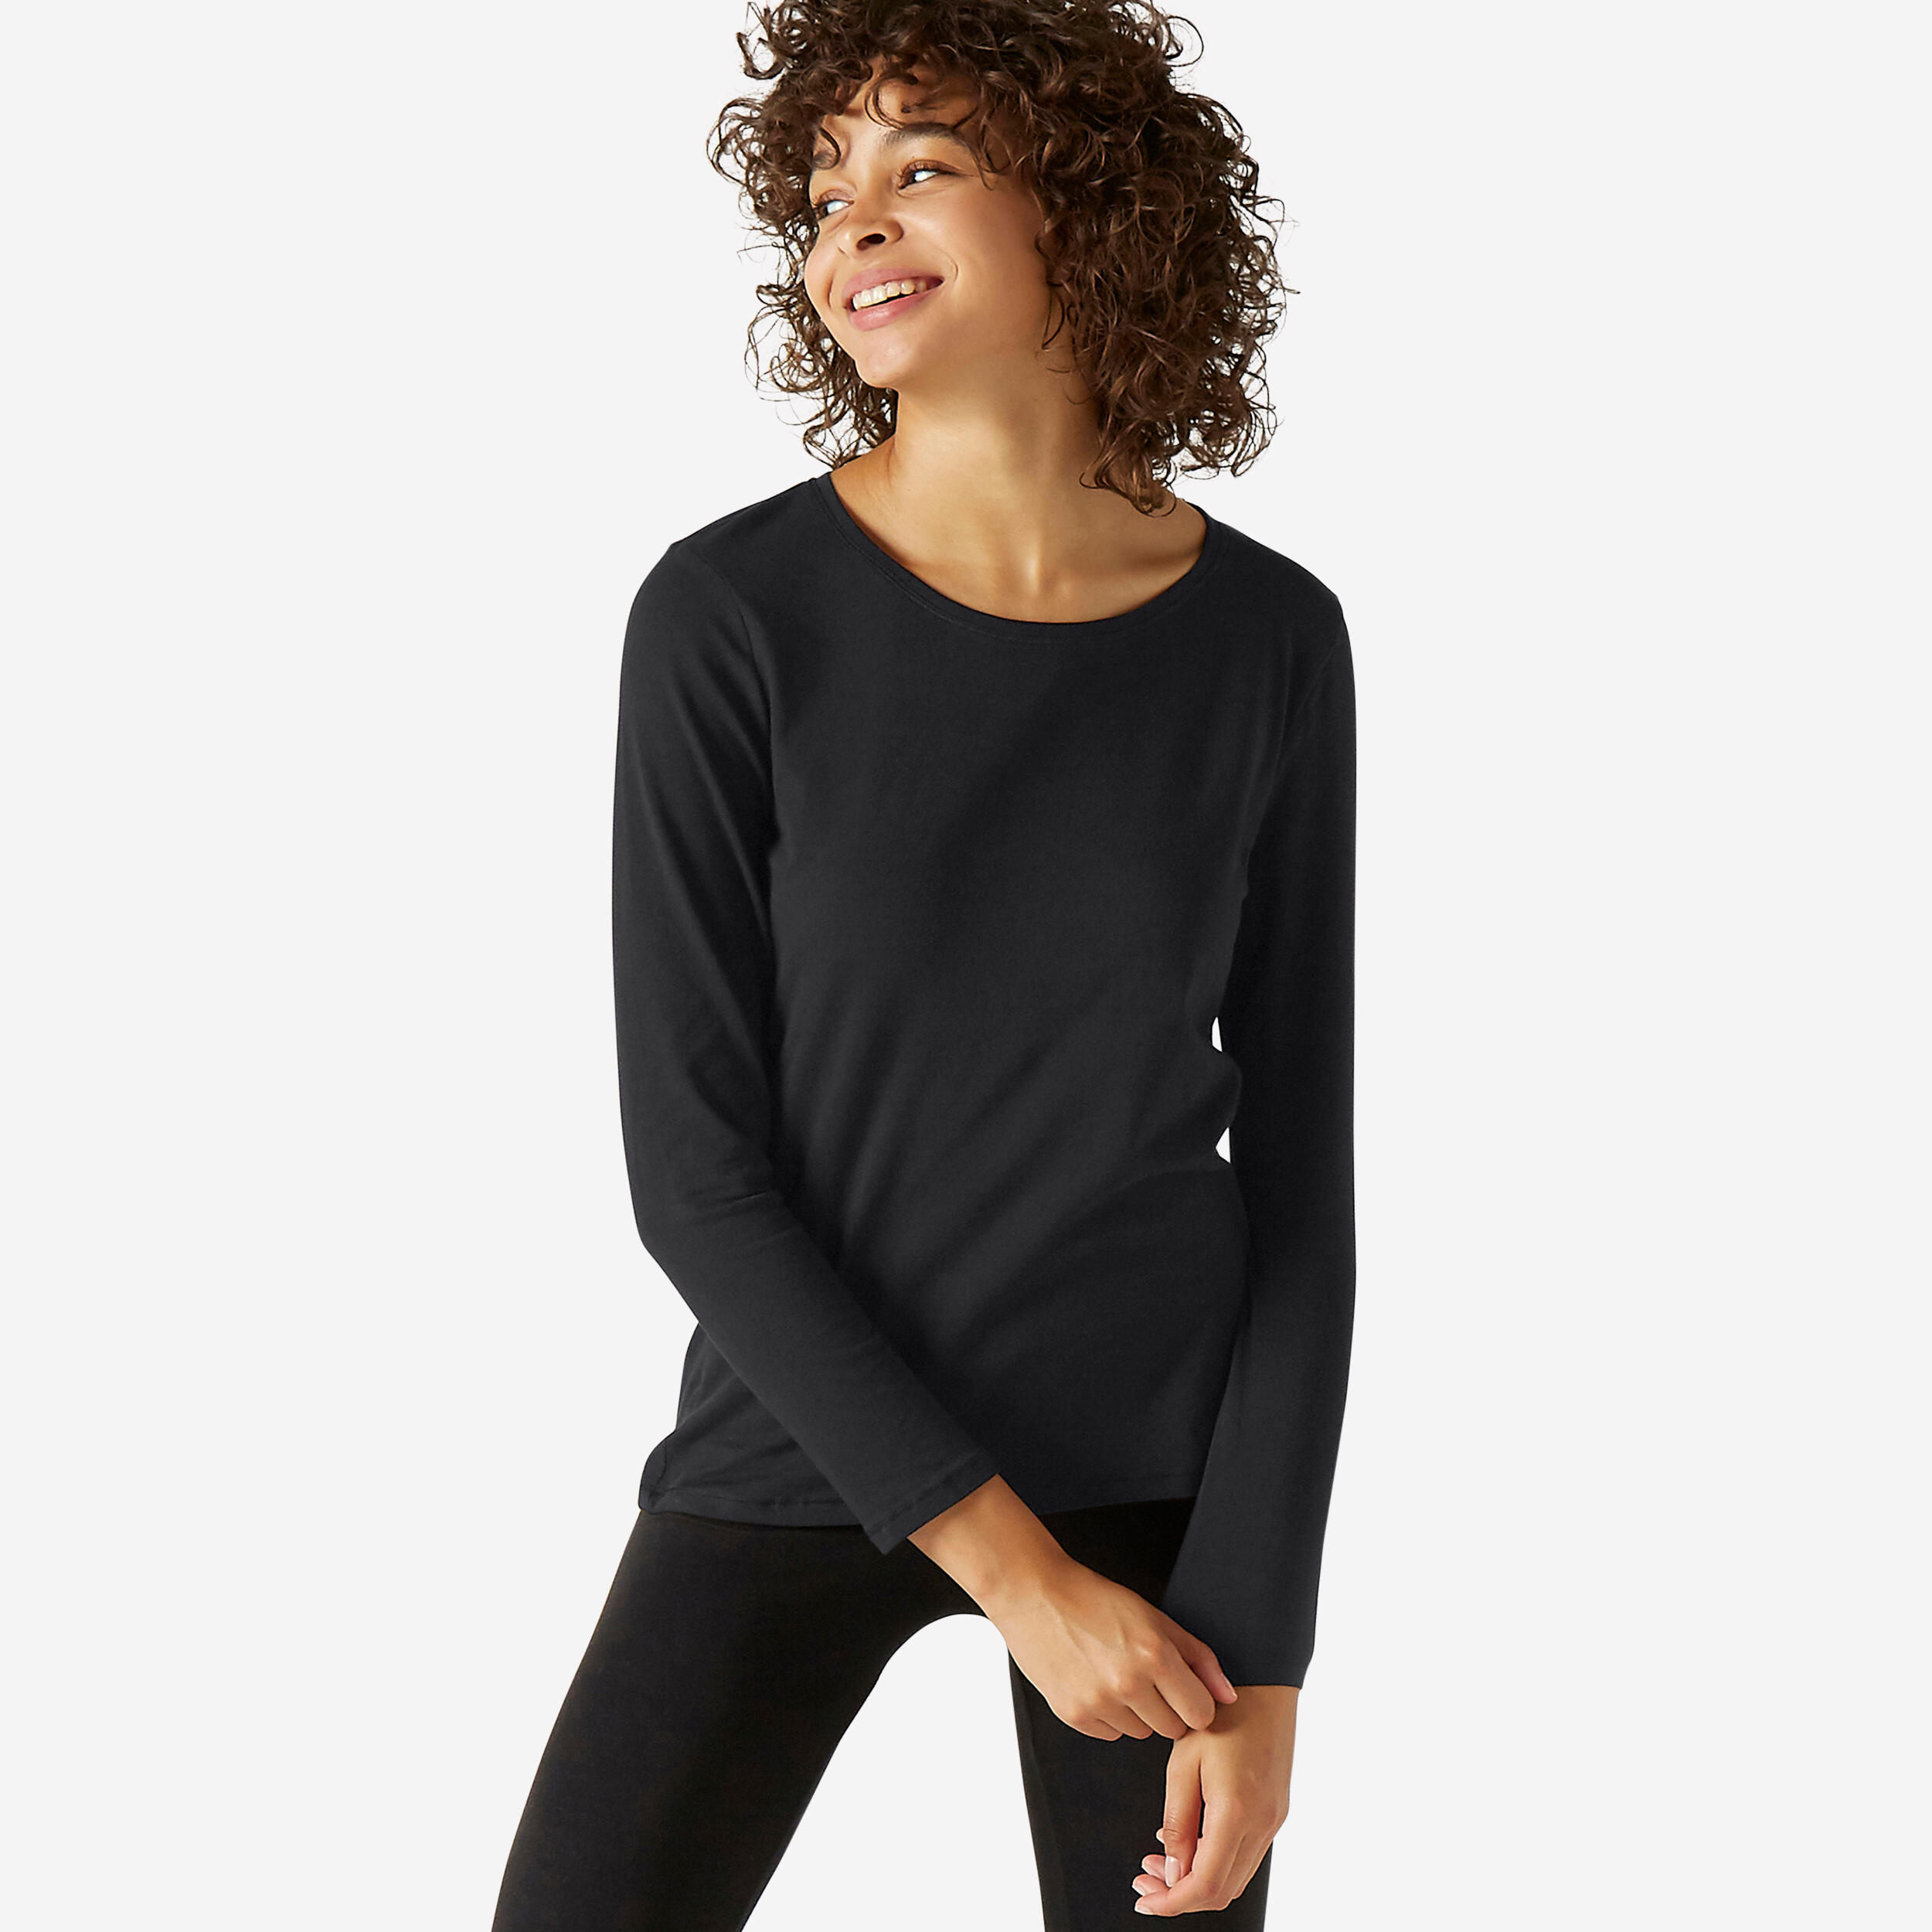 Women's Long-Sleeved Fitness T-Shirt 100 - Black 1/5